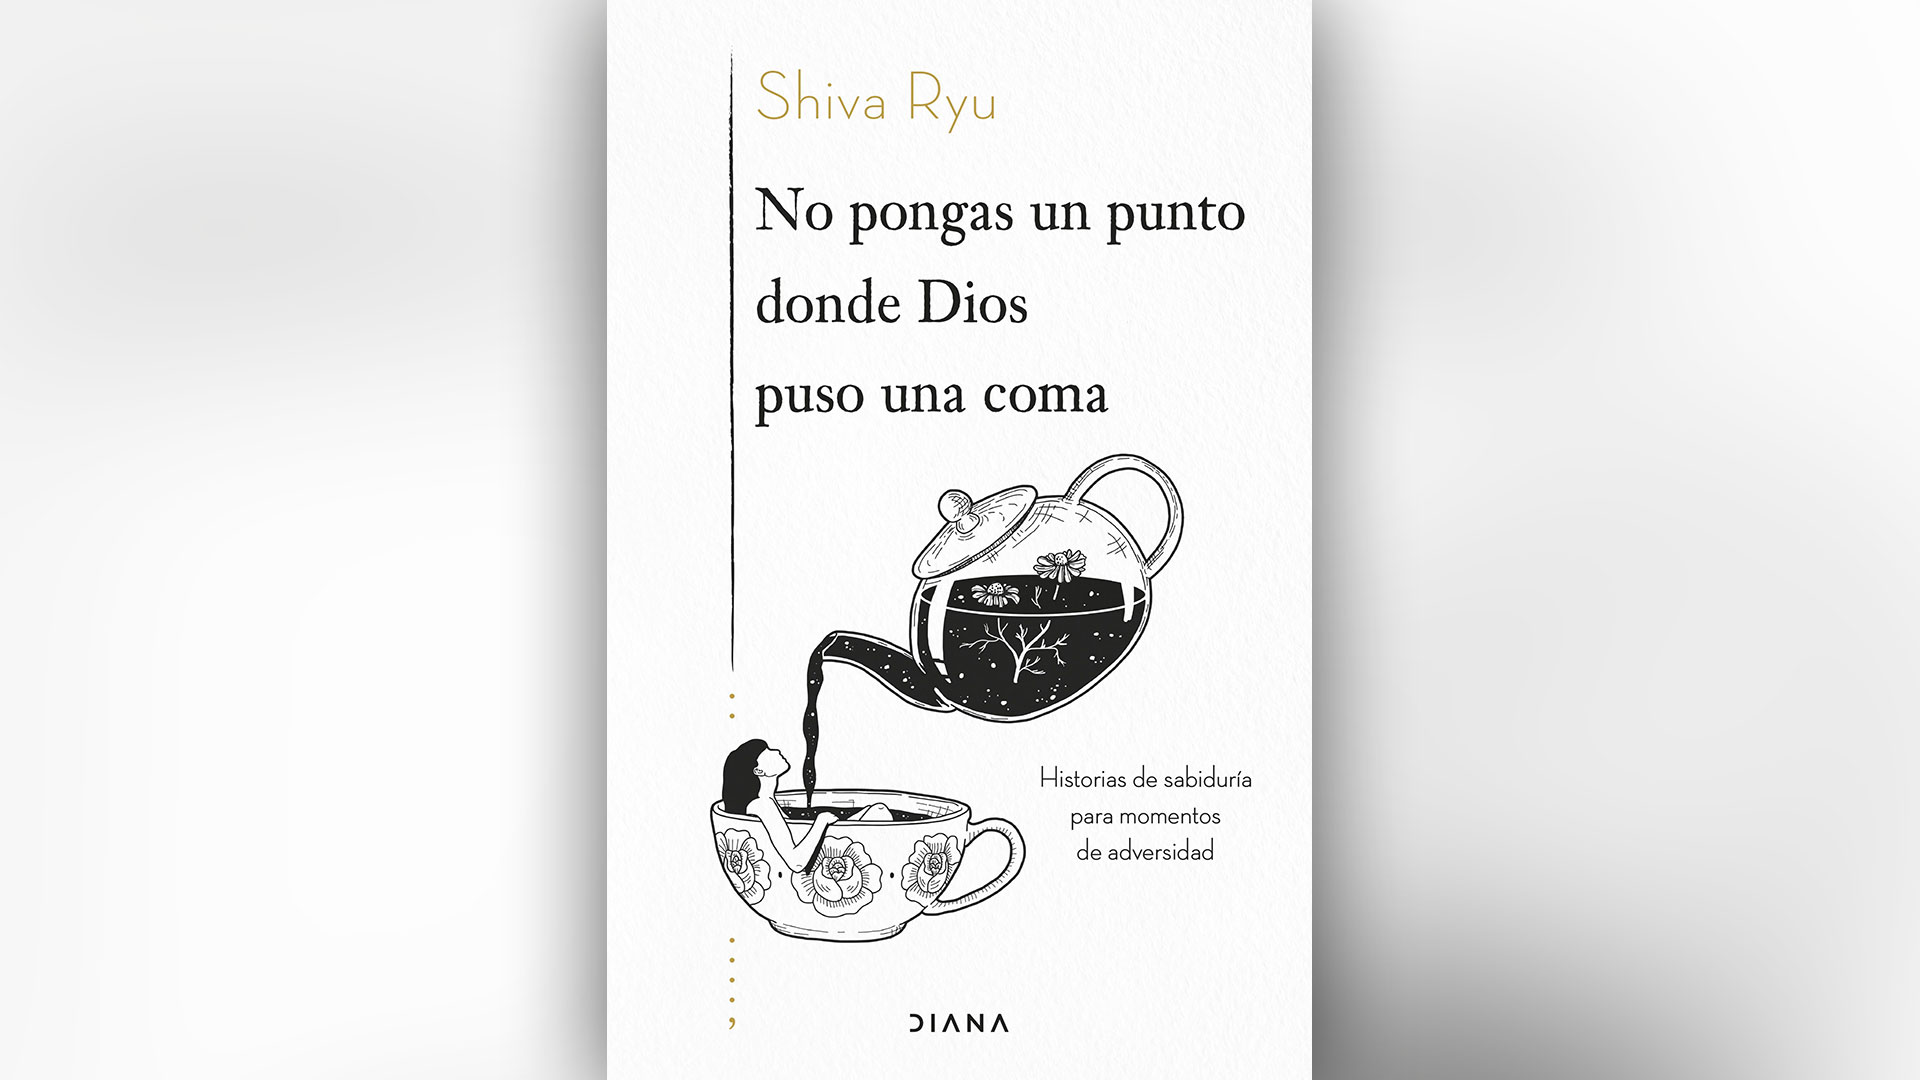 La pérdida y la despedida siempre tienen un sentido: el nuevo libro del exitoso escritor surcoreano Shiva Ryu